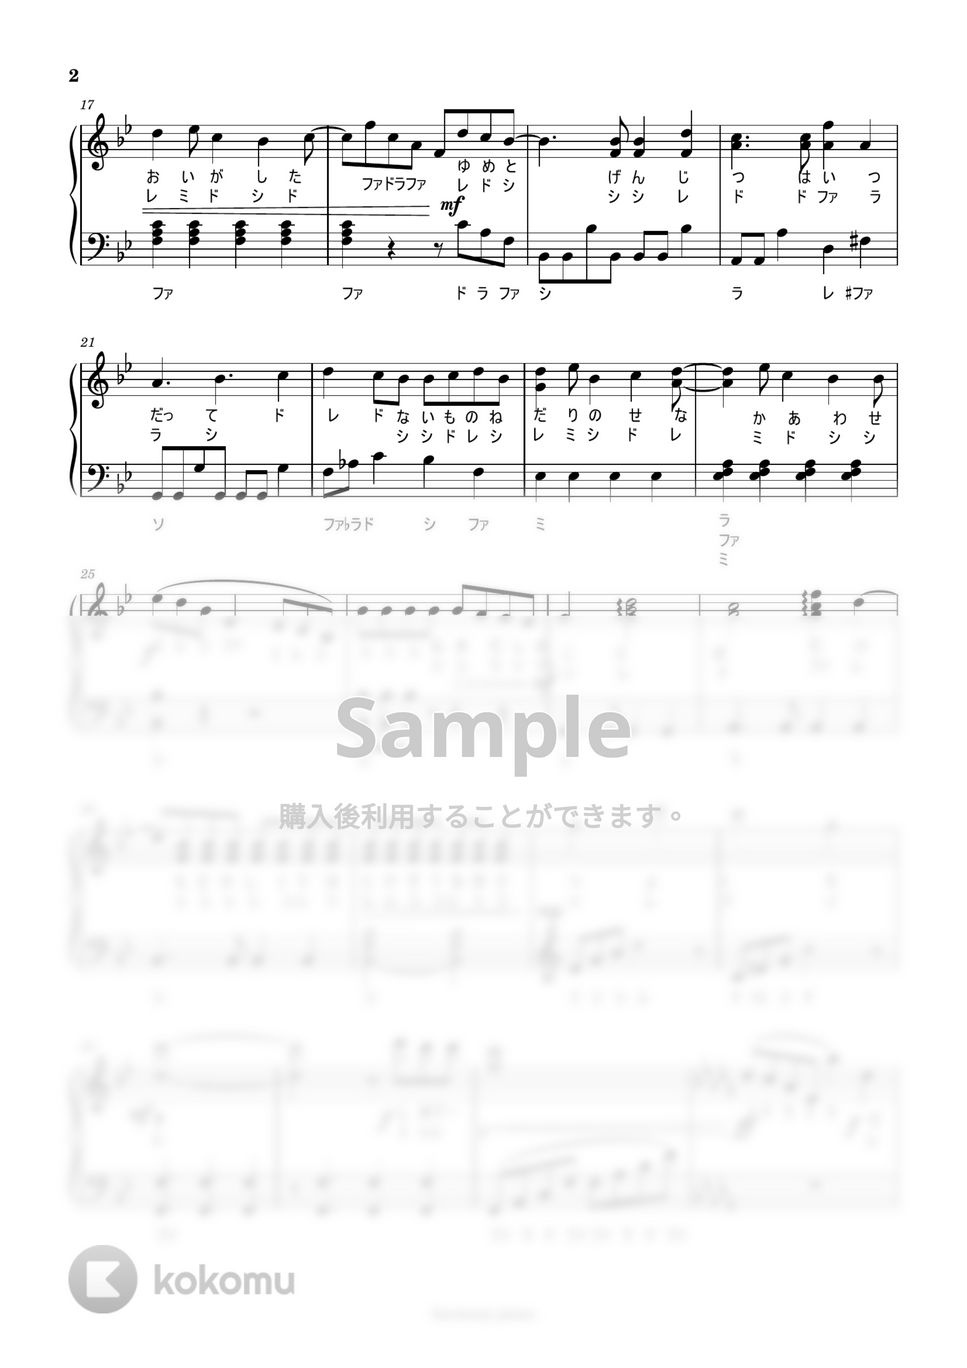 なにわ男子 ドレミ付 - [初級]シンシア by harmony piano